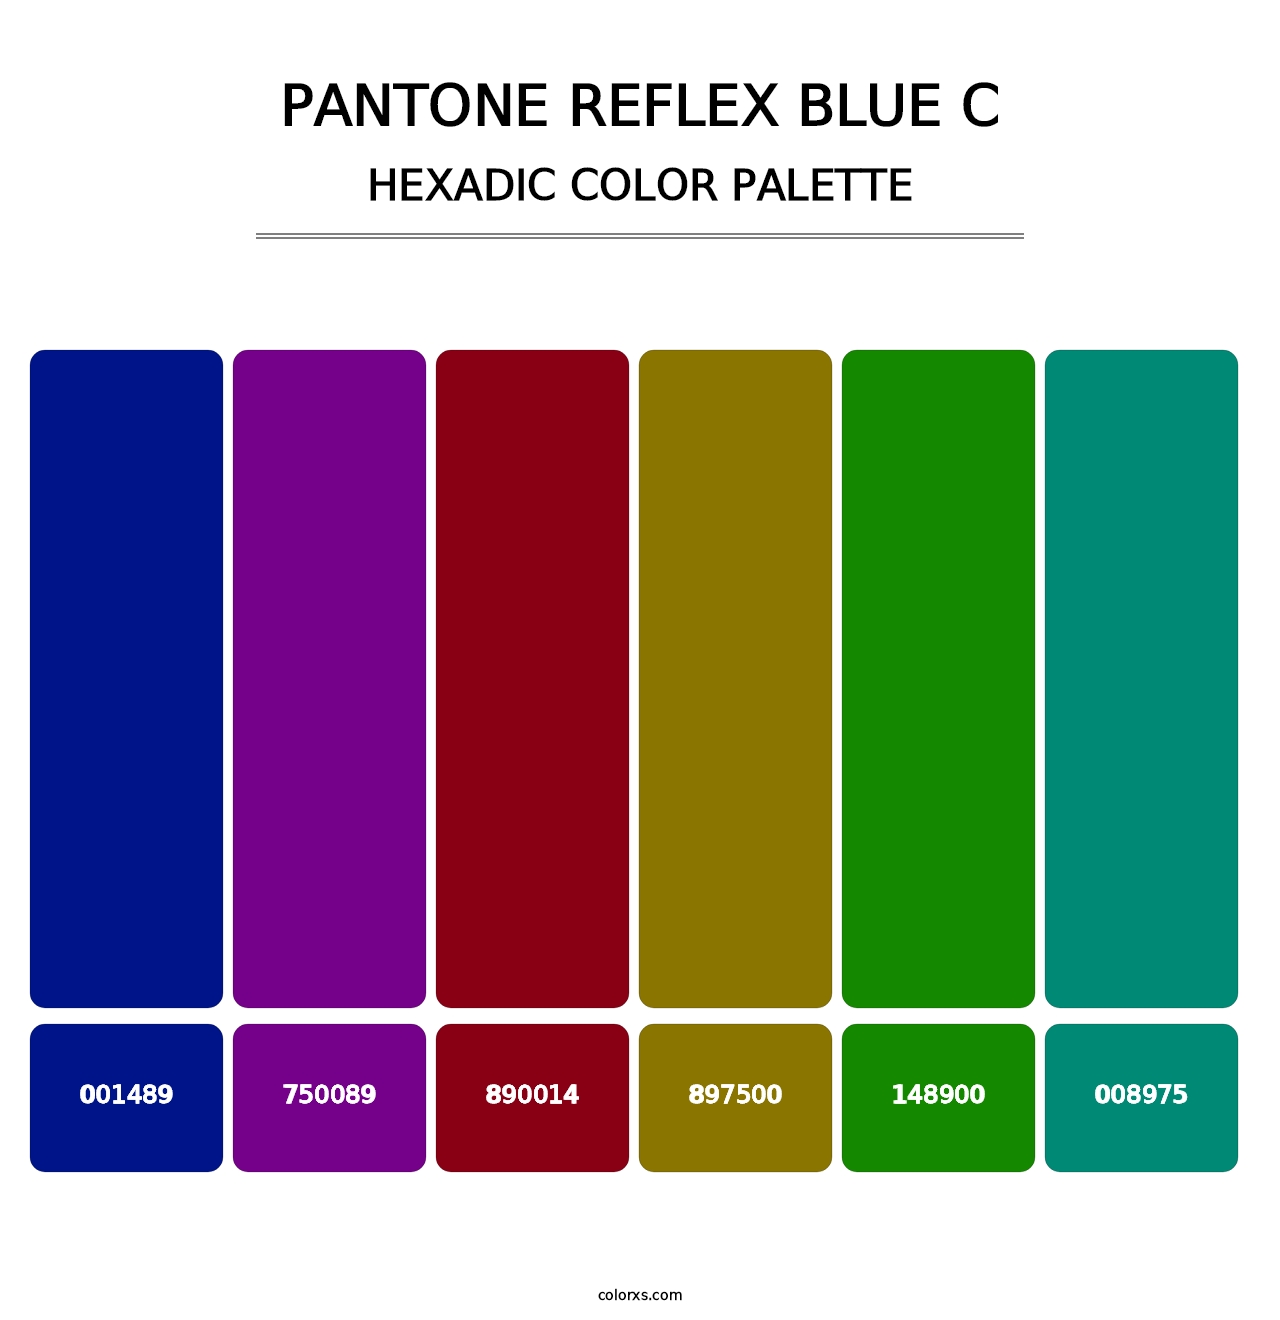 PANTONE Reflex Blue C - Hexadic Color Palette